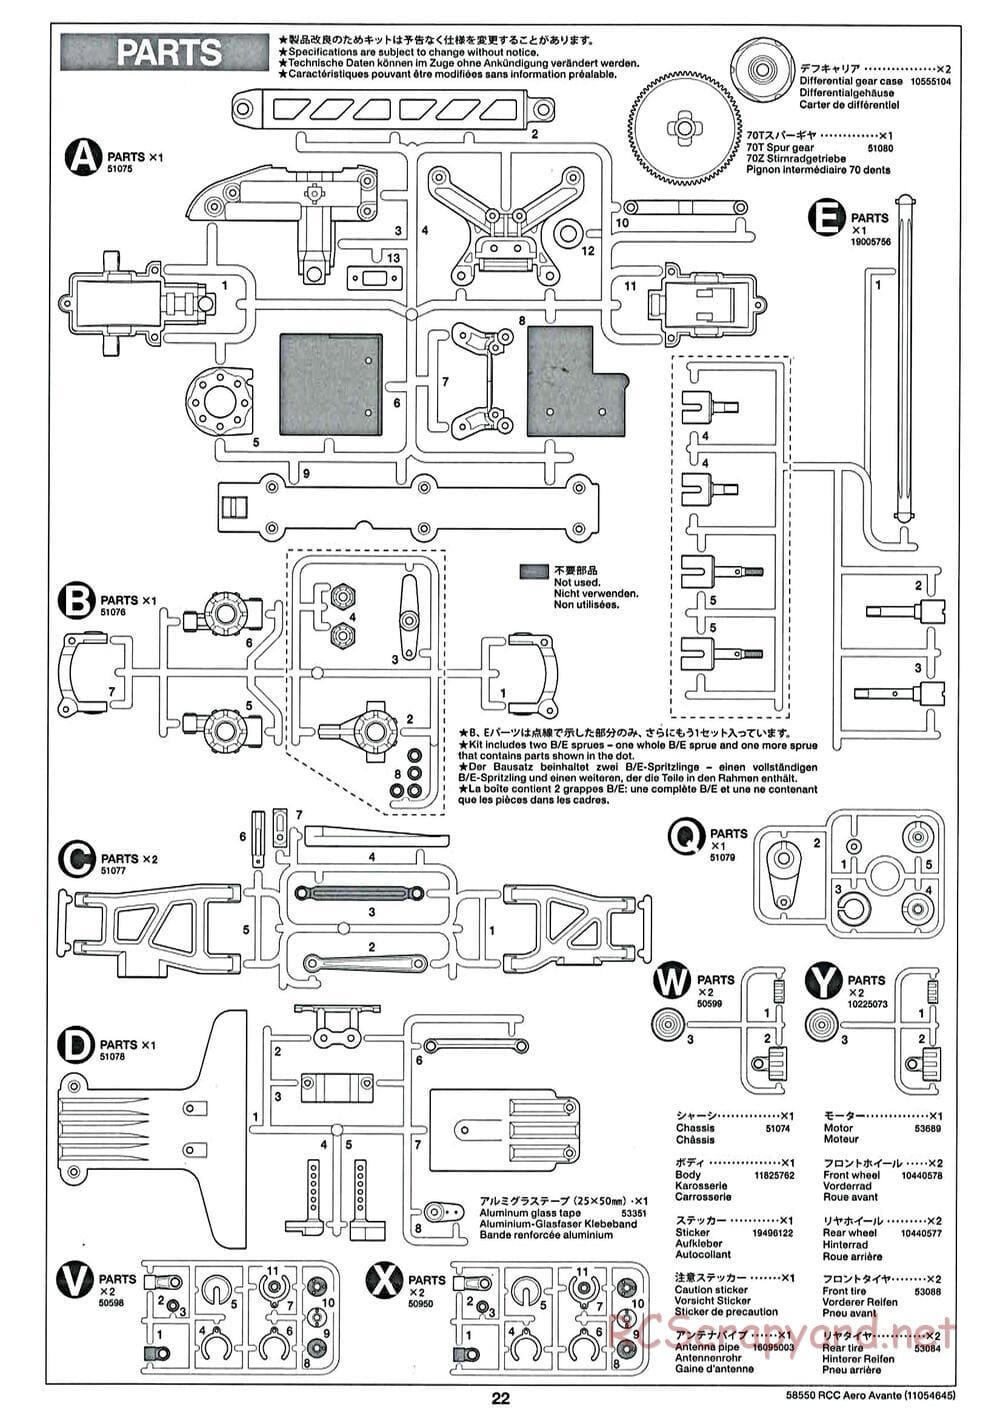 Tamiya - Aero Avante Chassis - Manual - Page 22